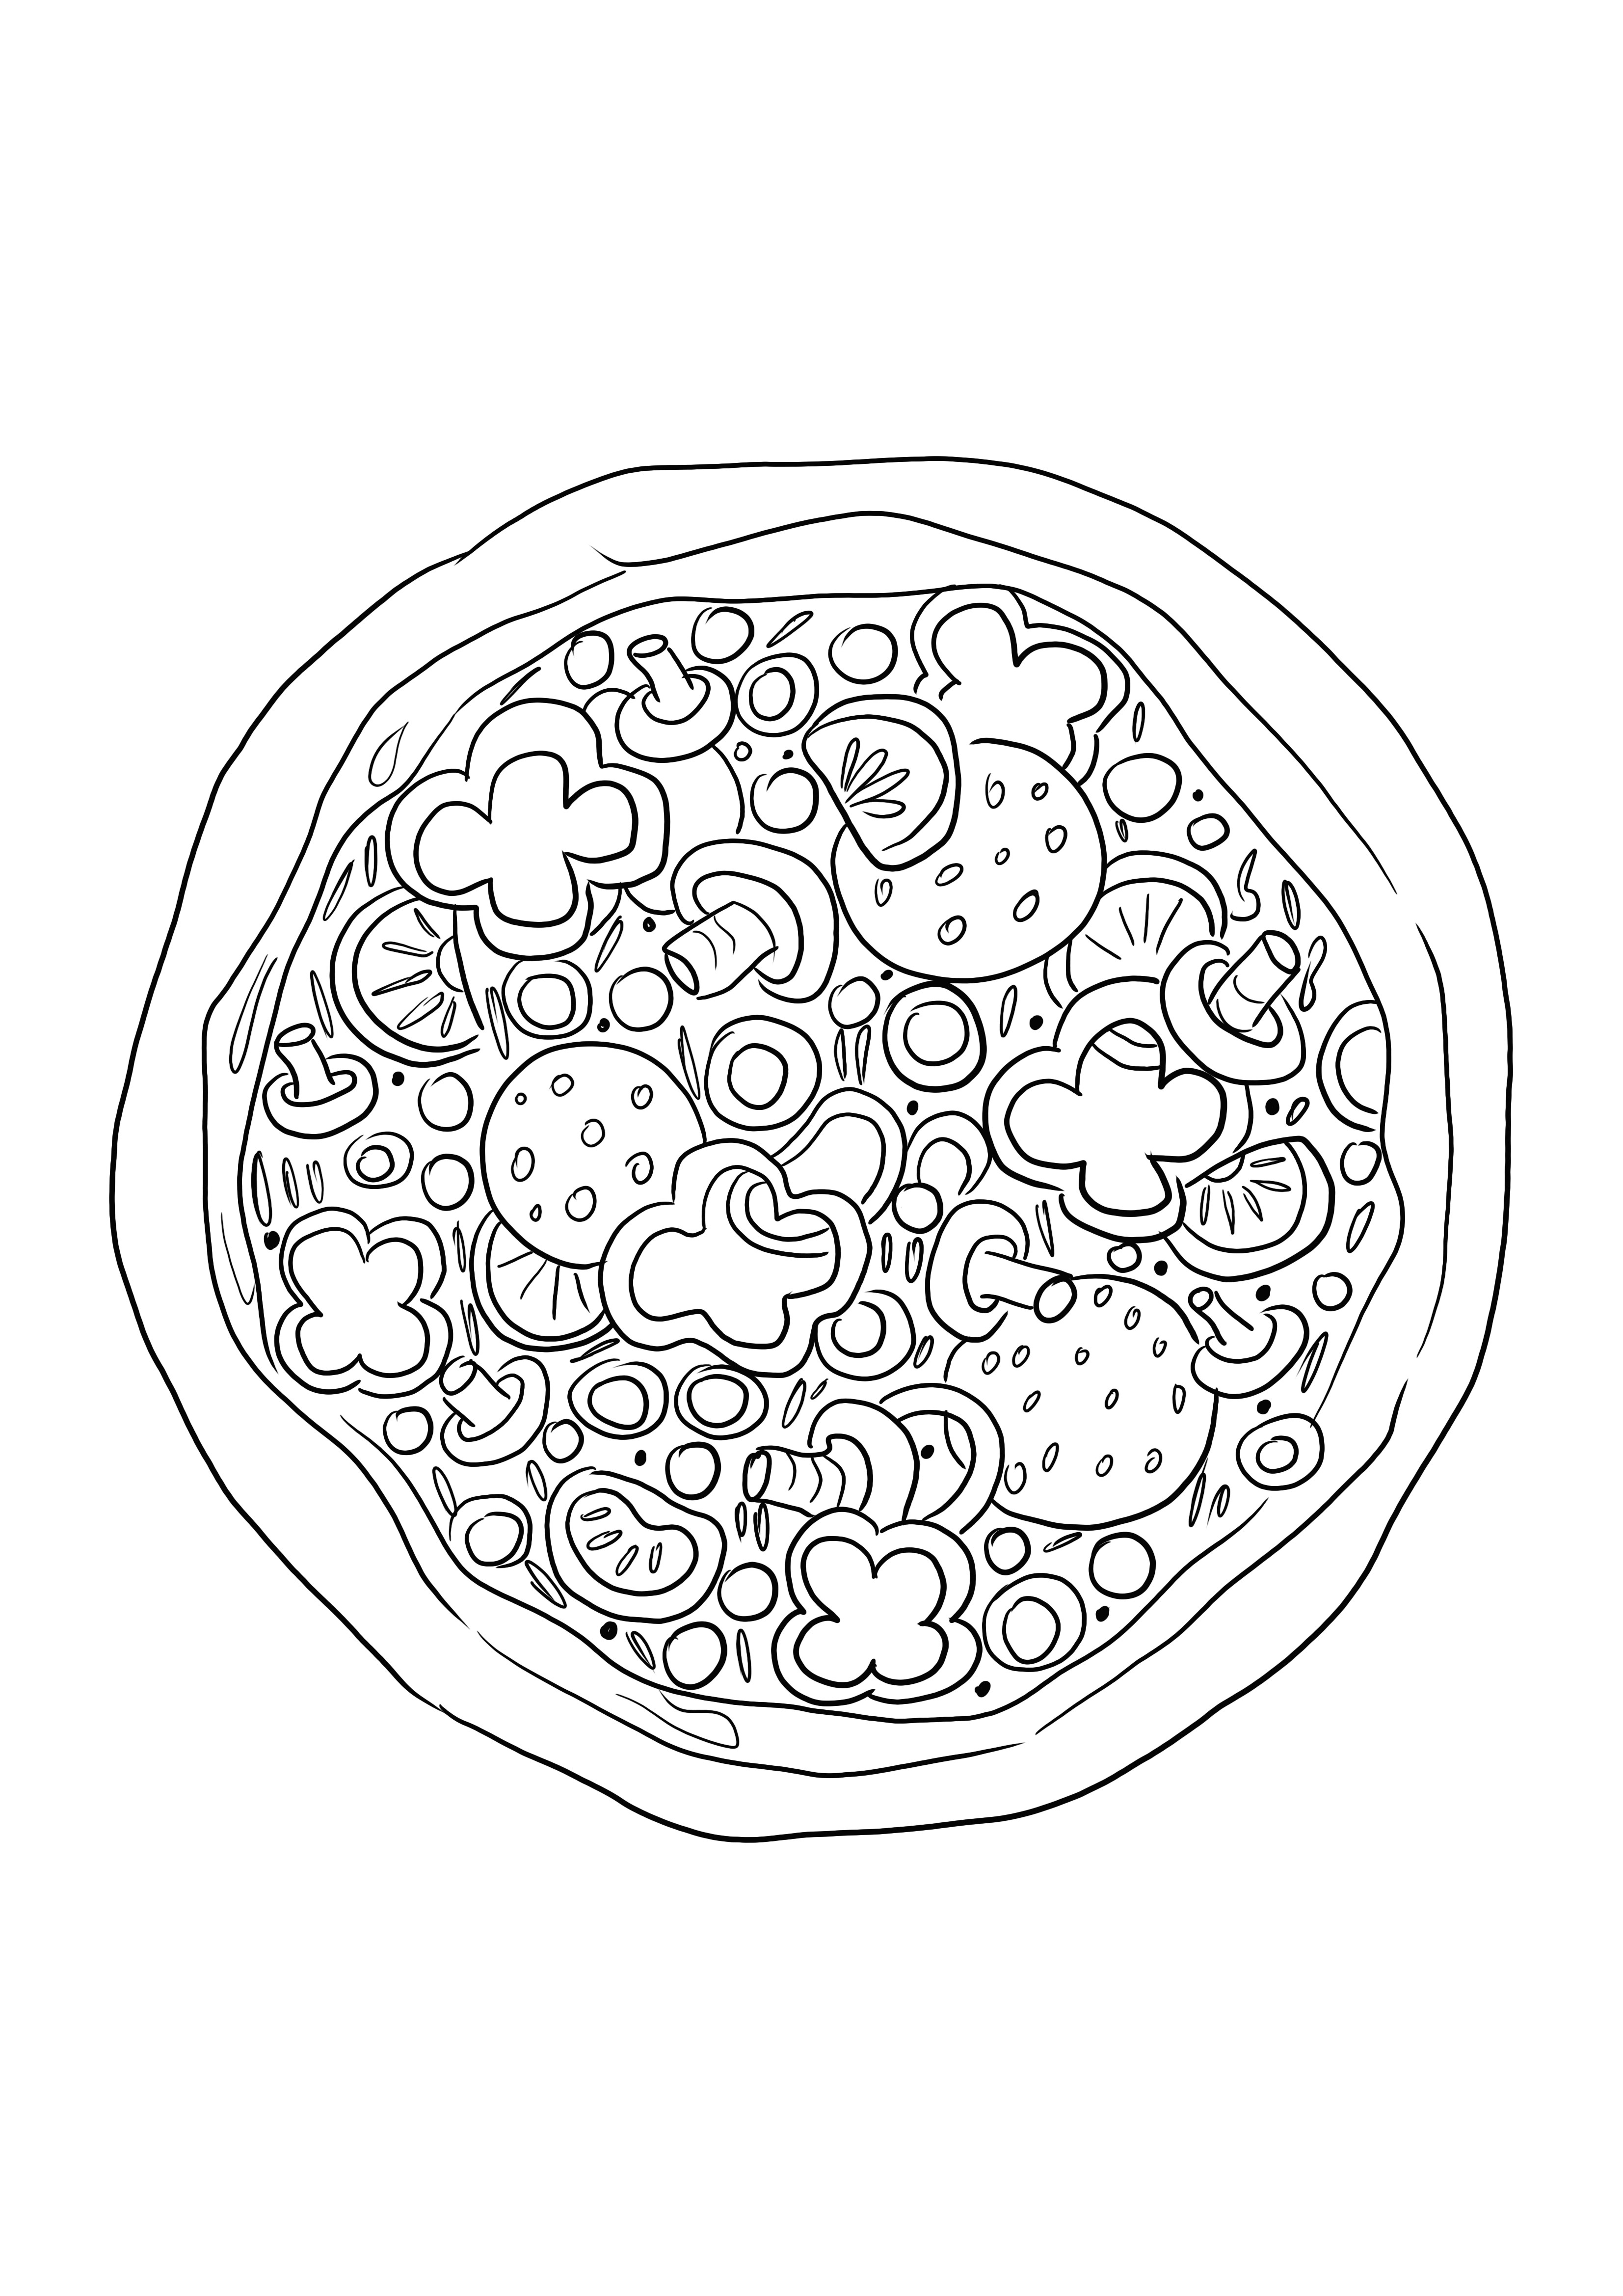 Desenho de pizza para colorir para as crianças colorirem facilmente e aprenderem sobre comida